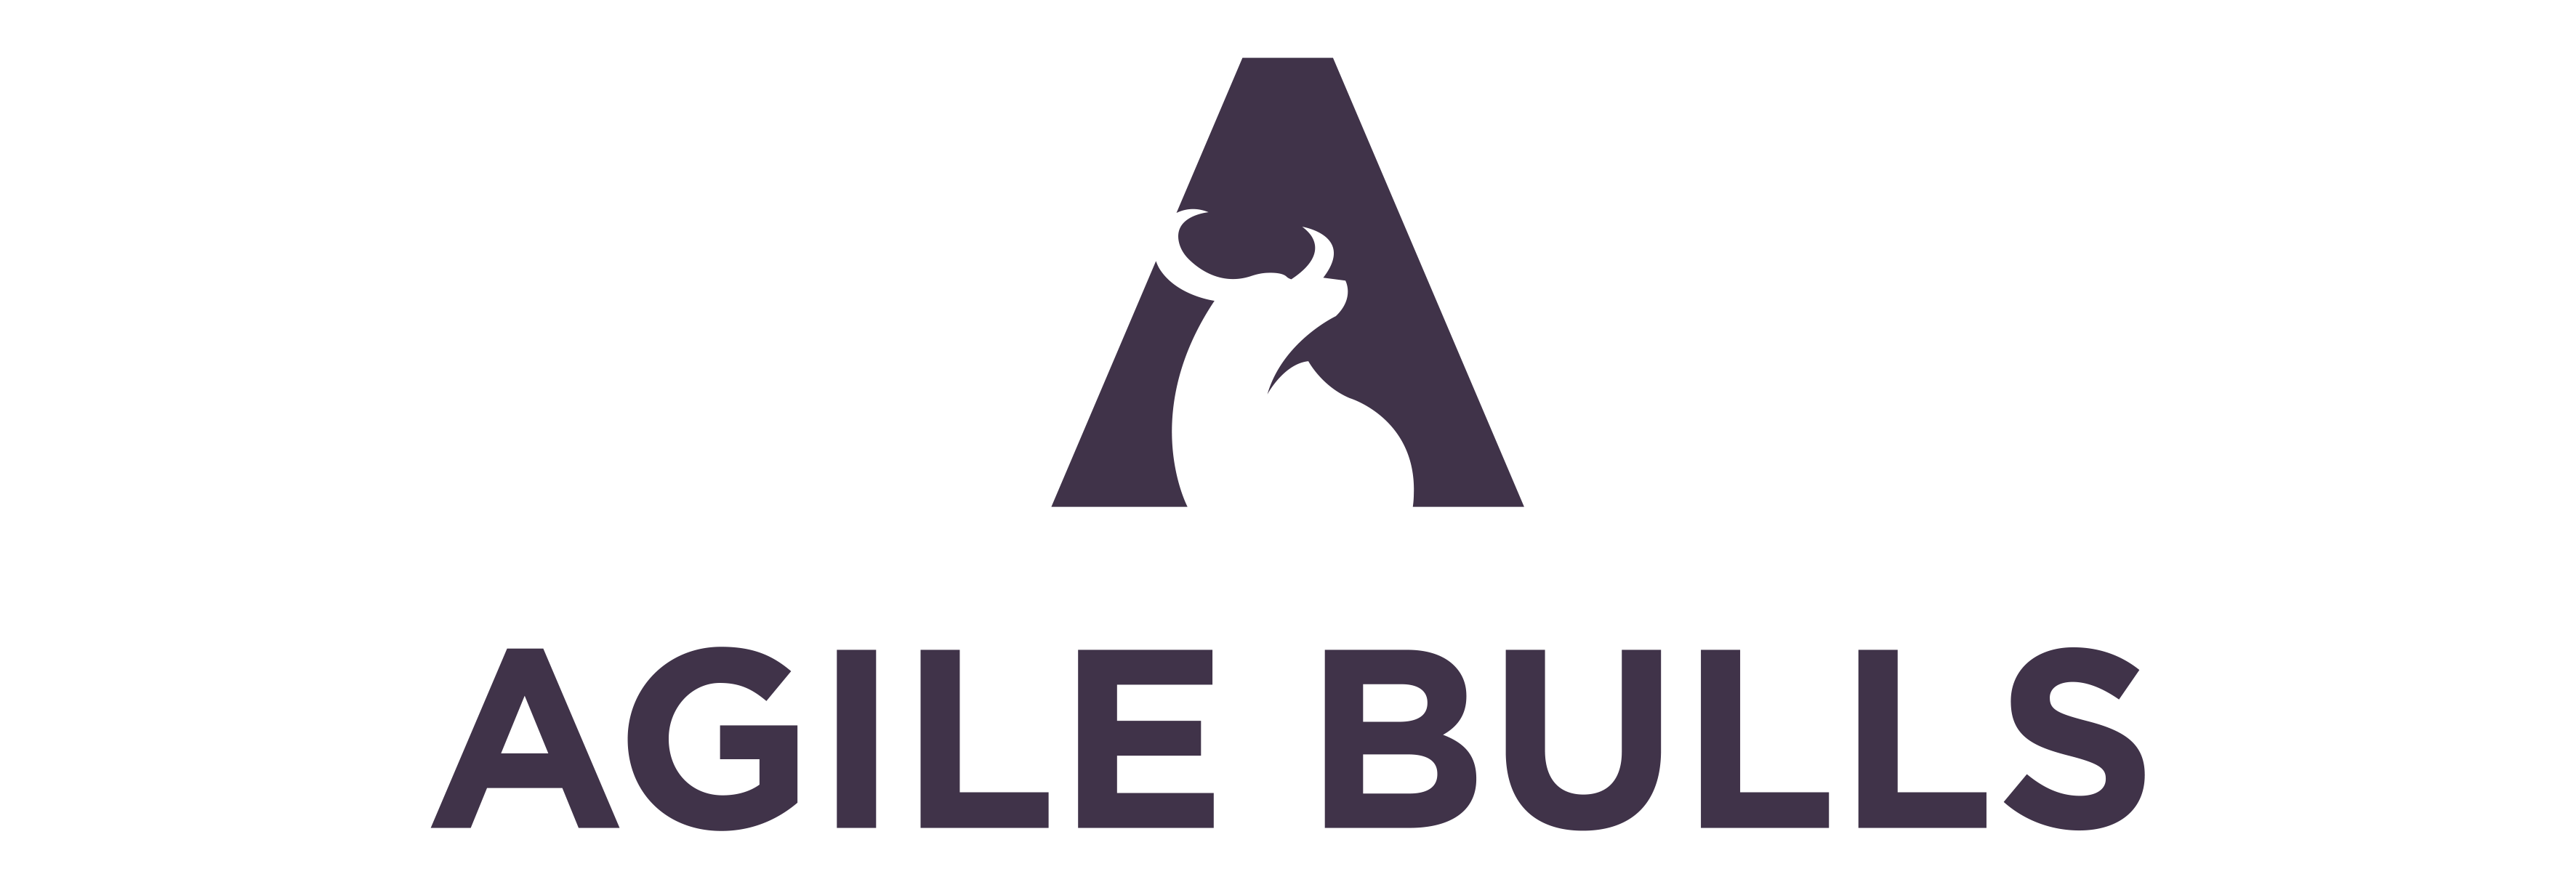 Agile Bulls